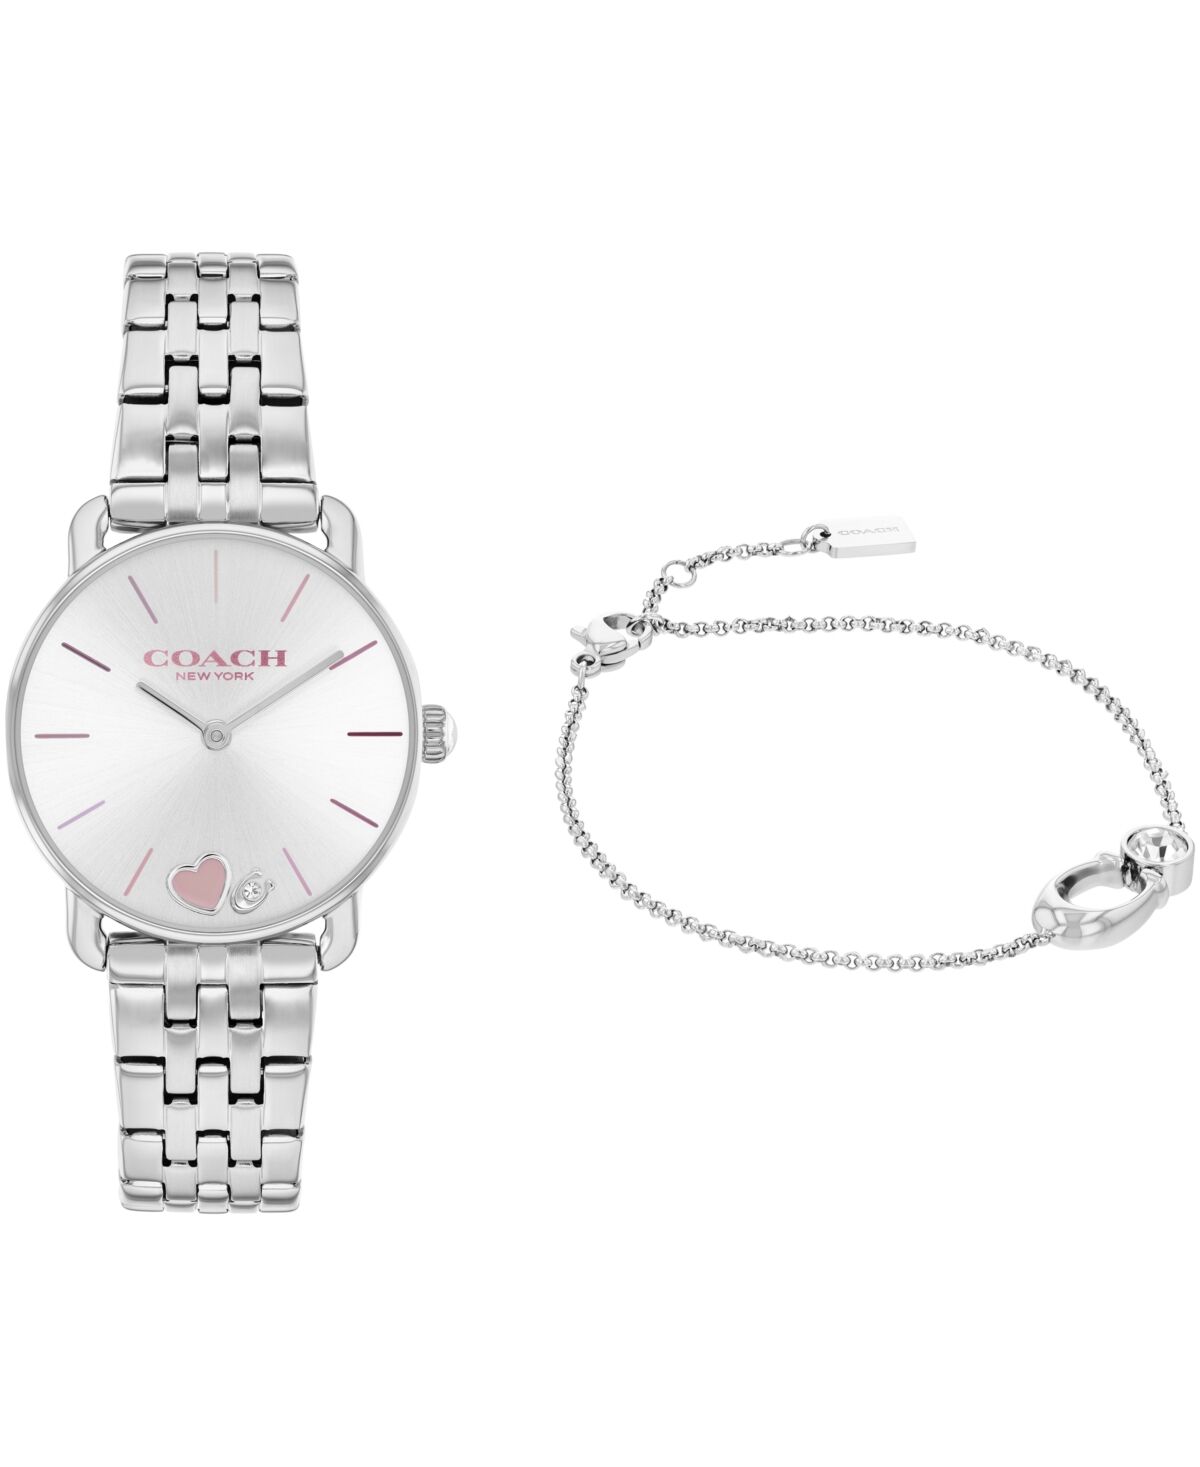 Coach Women's Elliot Silver-Tone Stainless Steel Bracelet Watch 28mm Gift Set - Silver